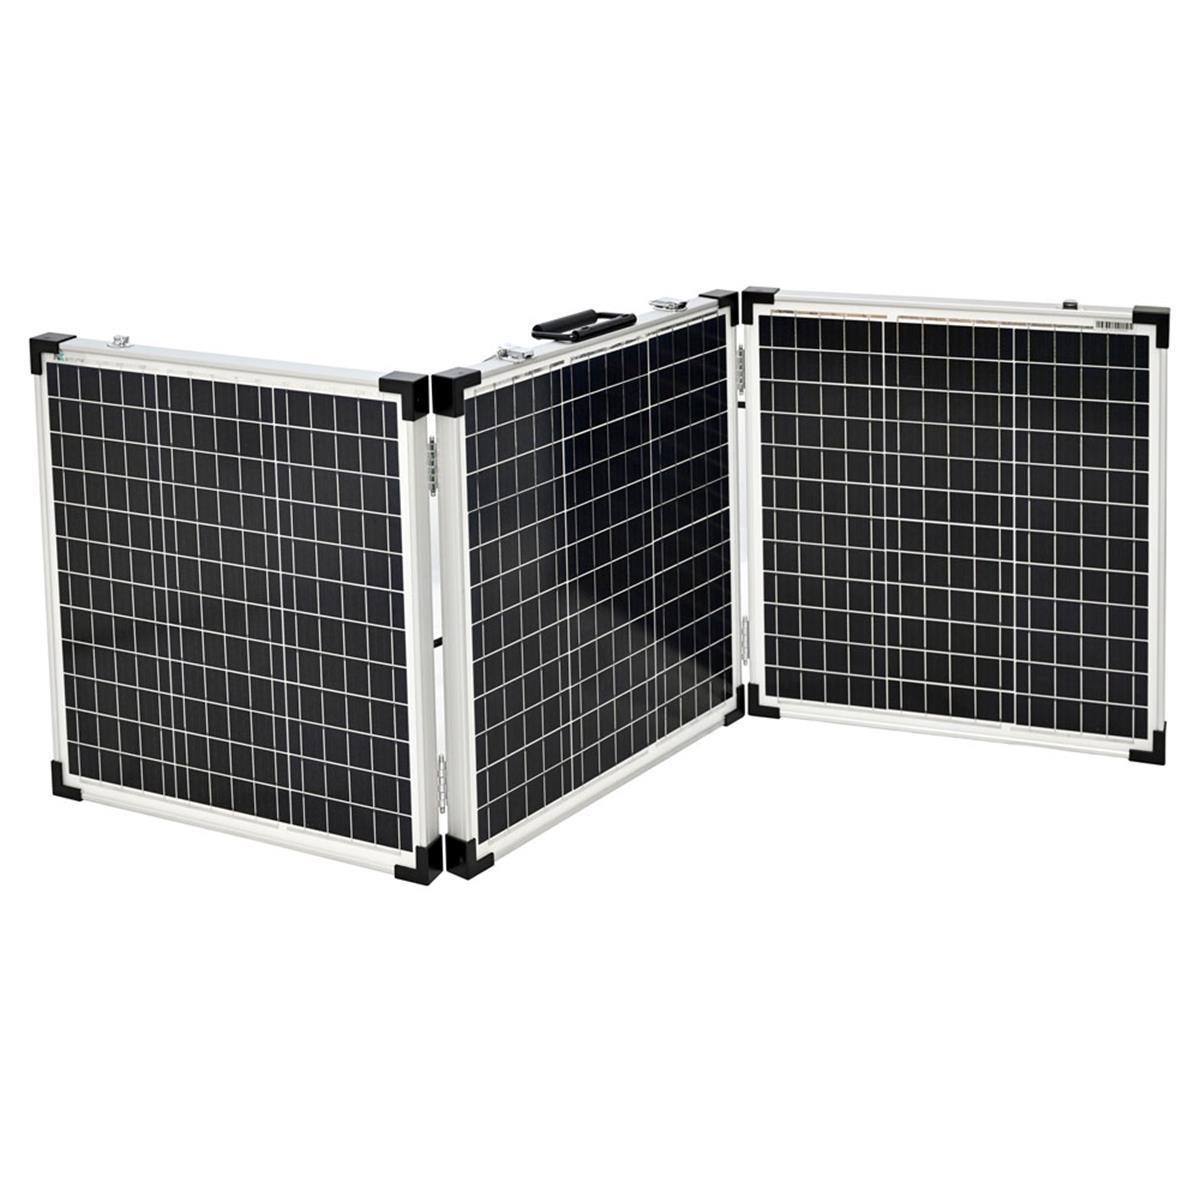 EcoFlow Delta 2 1024Wh Powerstation mit 150W Solarpanel